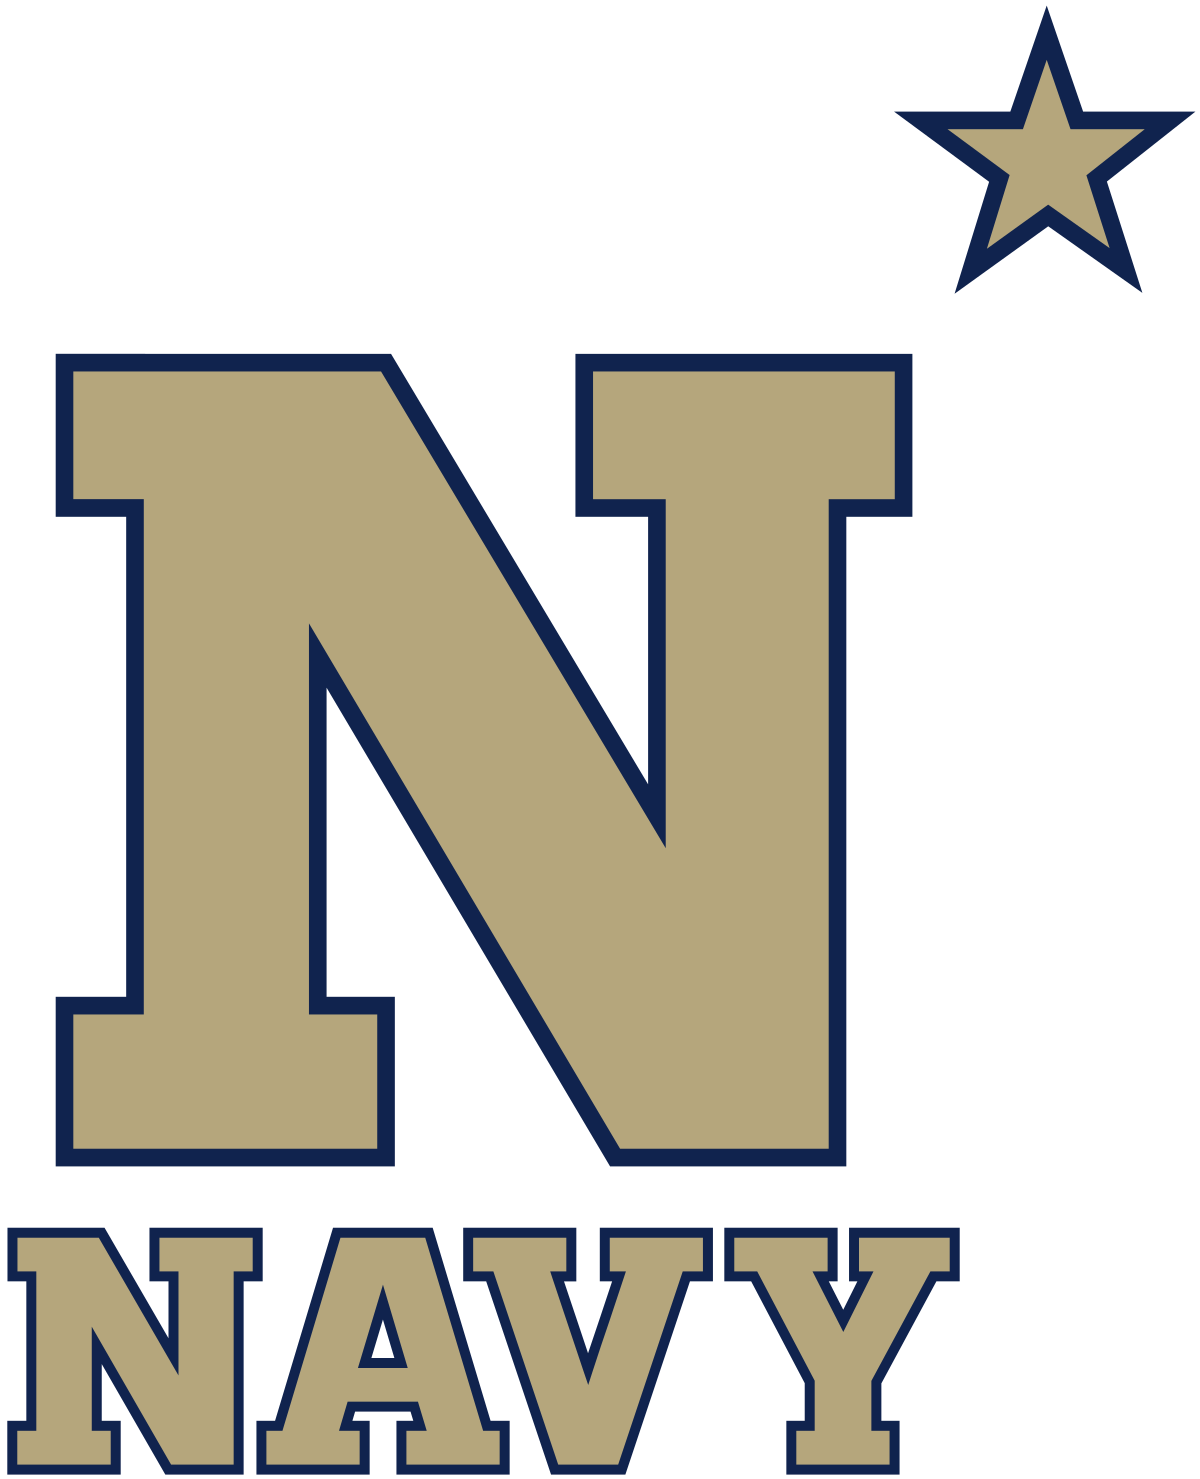 Navy Midshipmen - Wikipedia